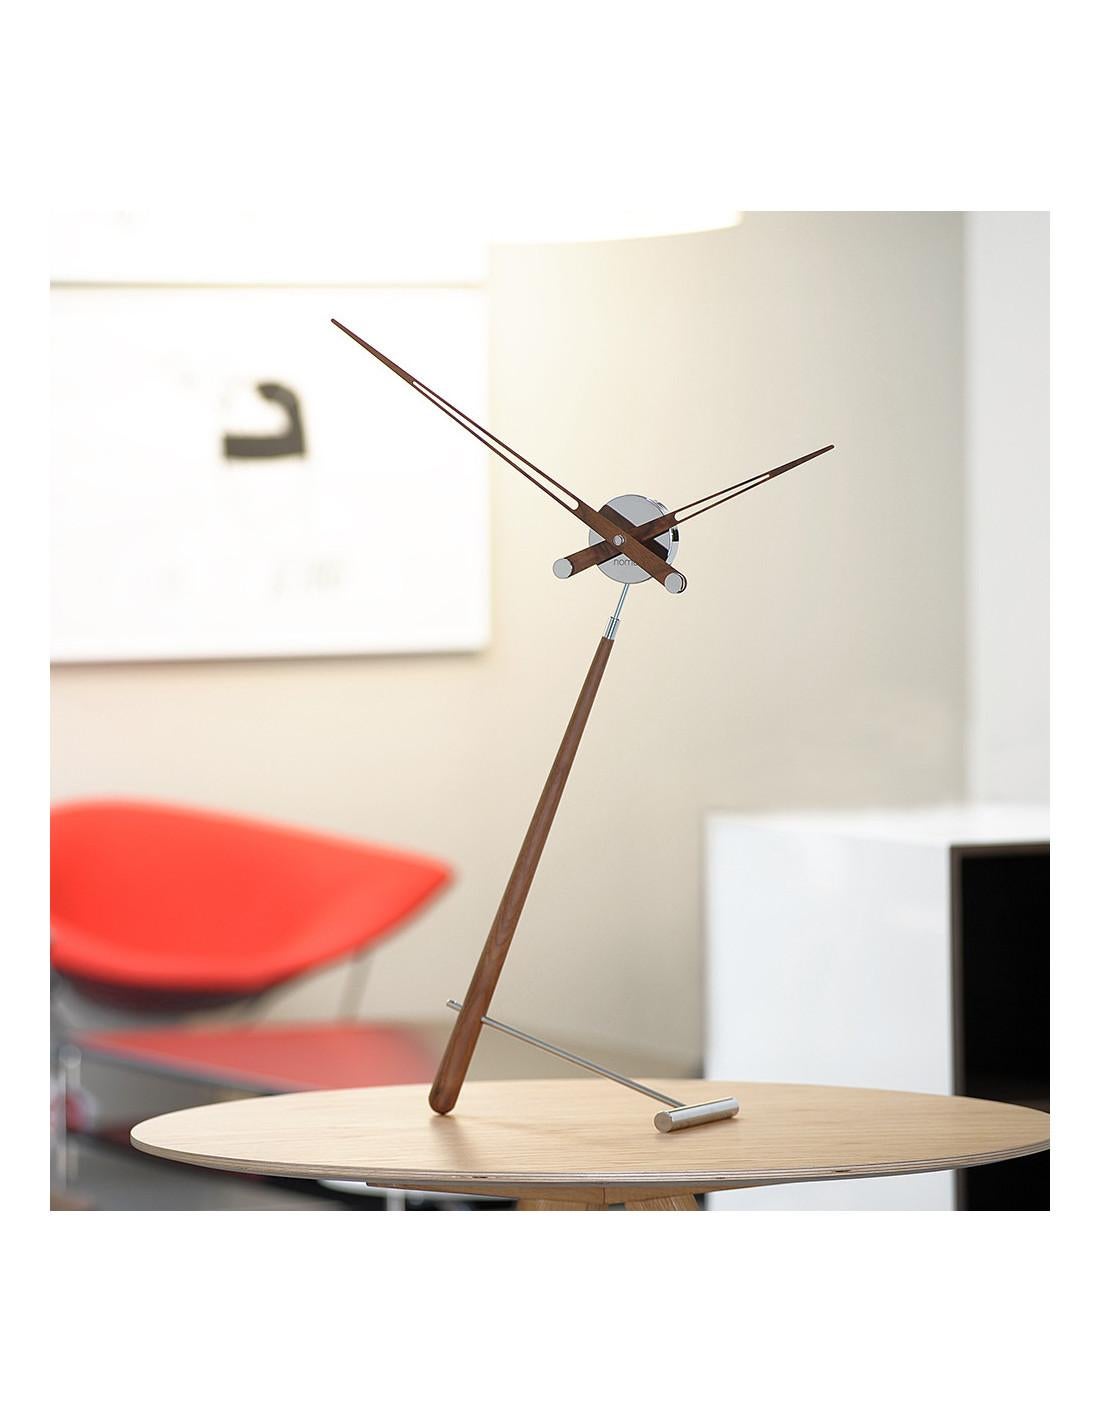 L'horloge de table Puntero N est une horloge dont le design en fait une pièce décorative élégante et stylée.
Le mécanisme allemand de l'UTS garantit la précision de son fonctionnement au fil des ans.
Horloge de table Puntero N : Boîte en laiton